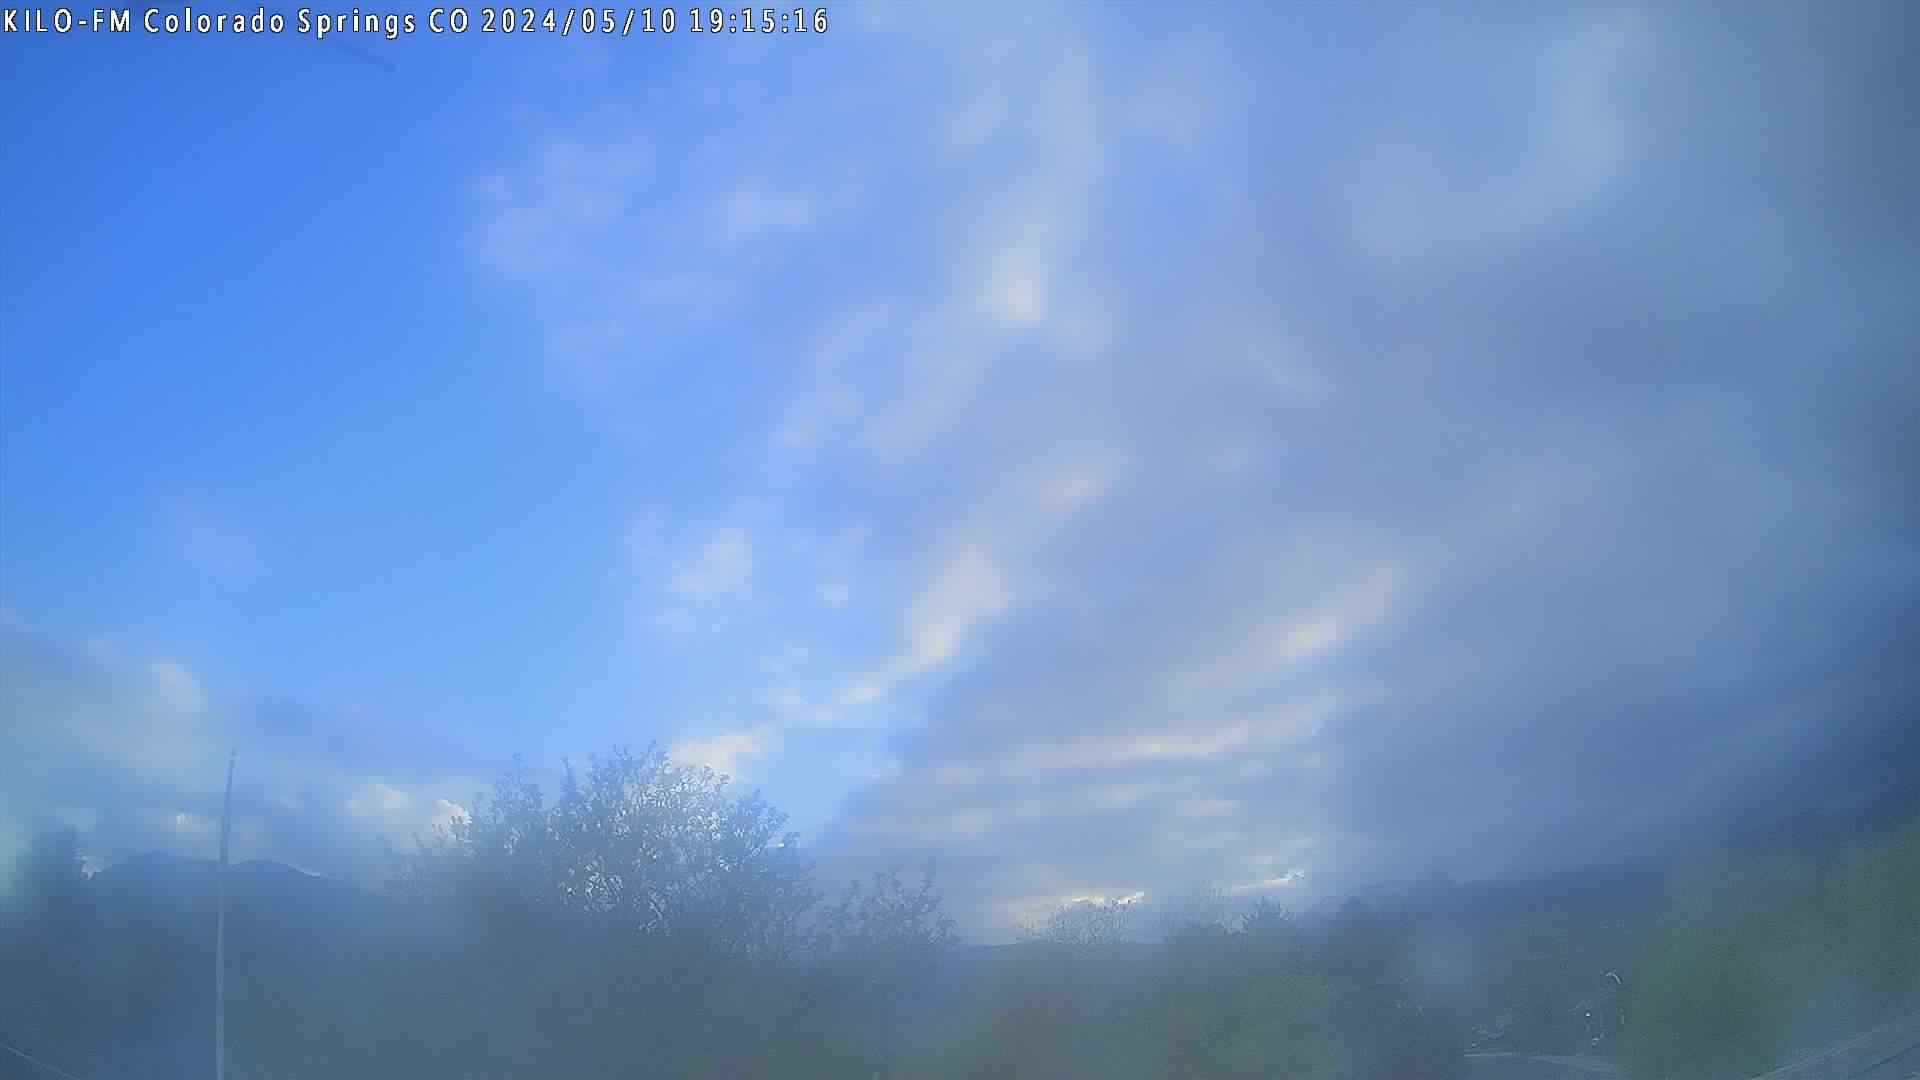  WeatherSTEM Cloud Camera kiloweatherstem in El Paso County, Colorado CO at KILO/X1039 Colorado Springs